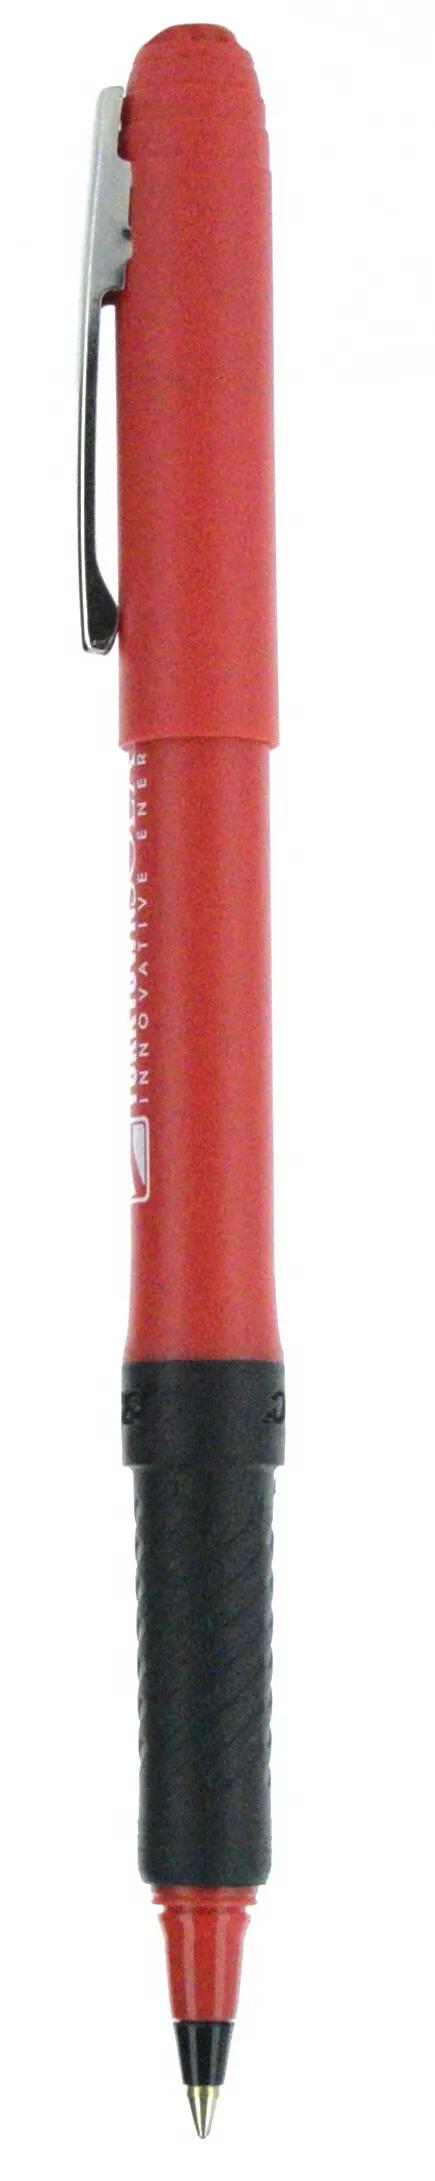 BIC® Grip Roller Pen 136 of 147